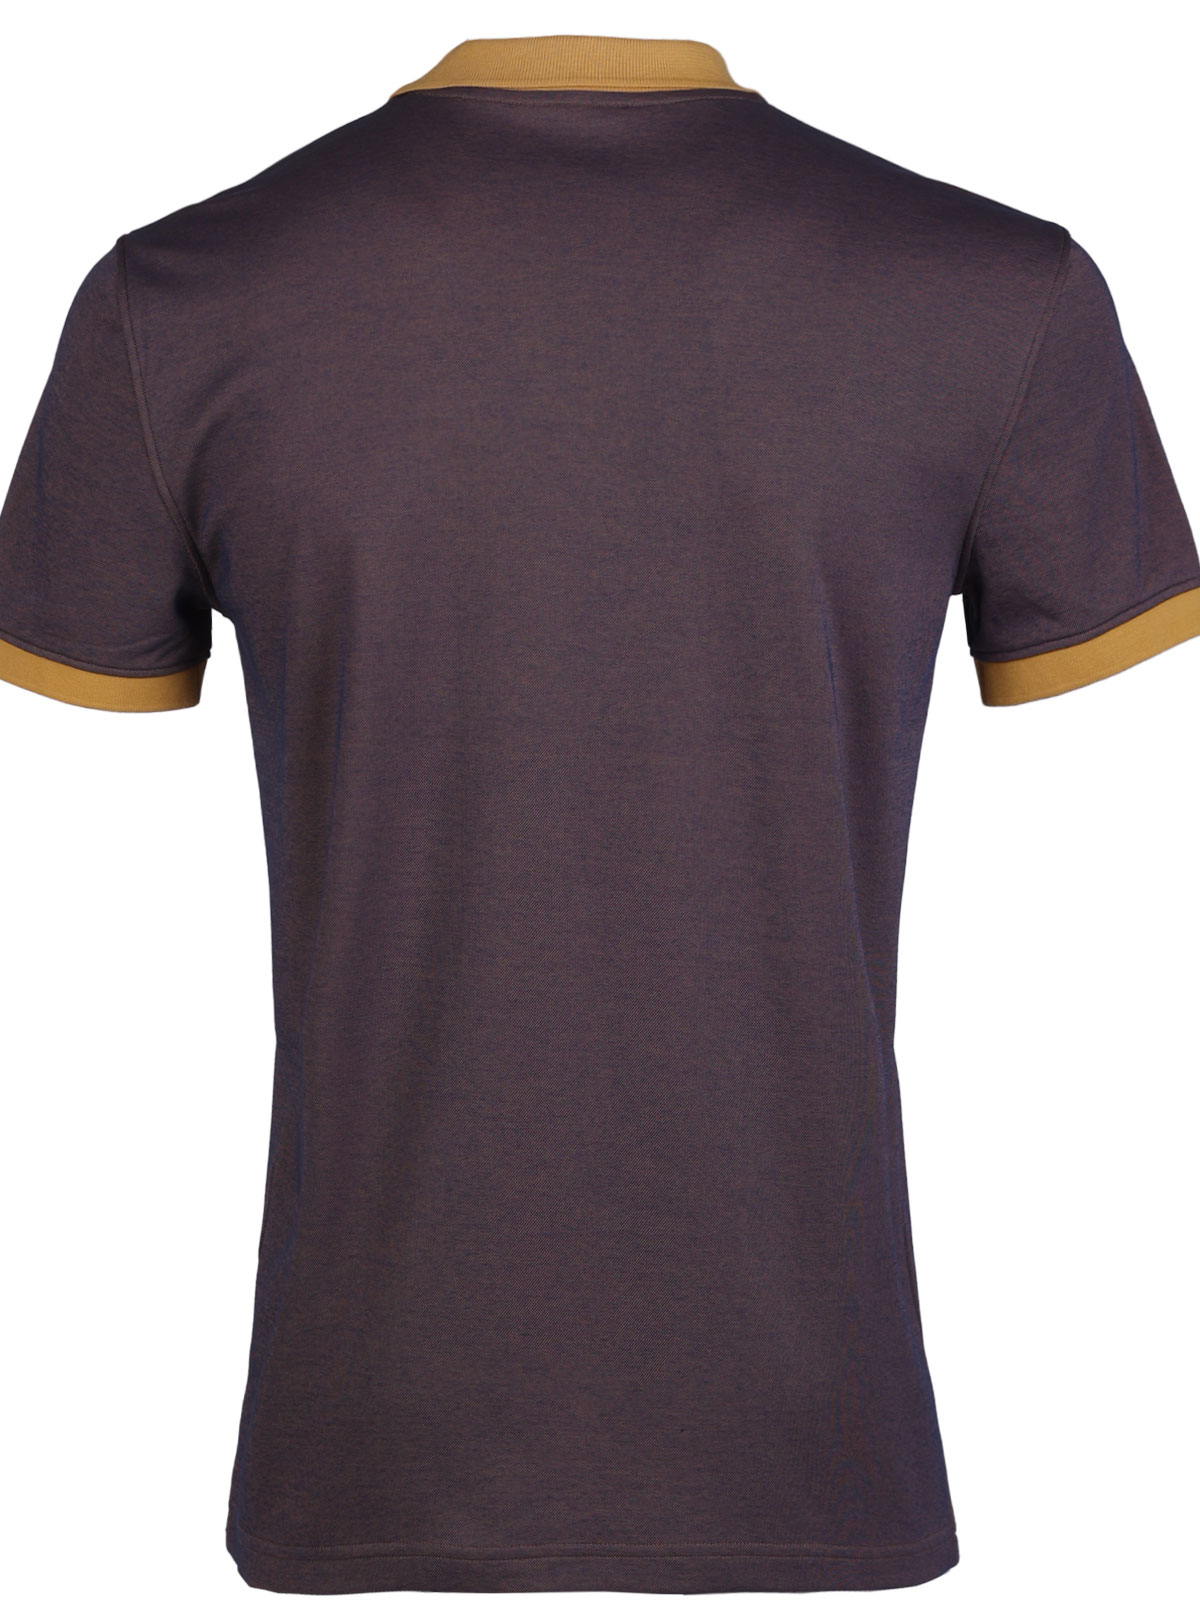 Ανδρικό tshirt σε καφέ μελανζέ - 93454 € 38.81 img2